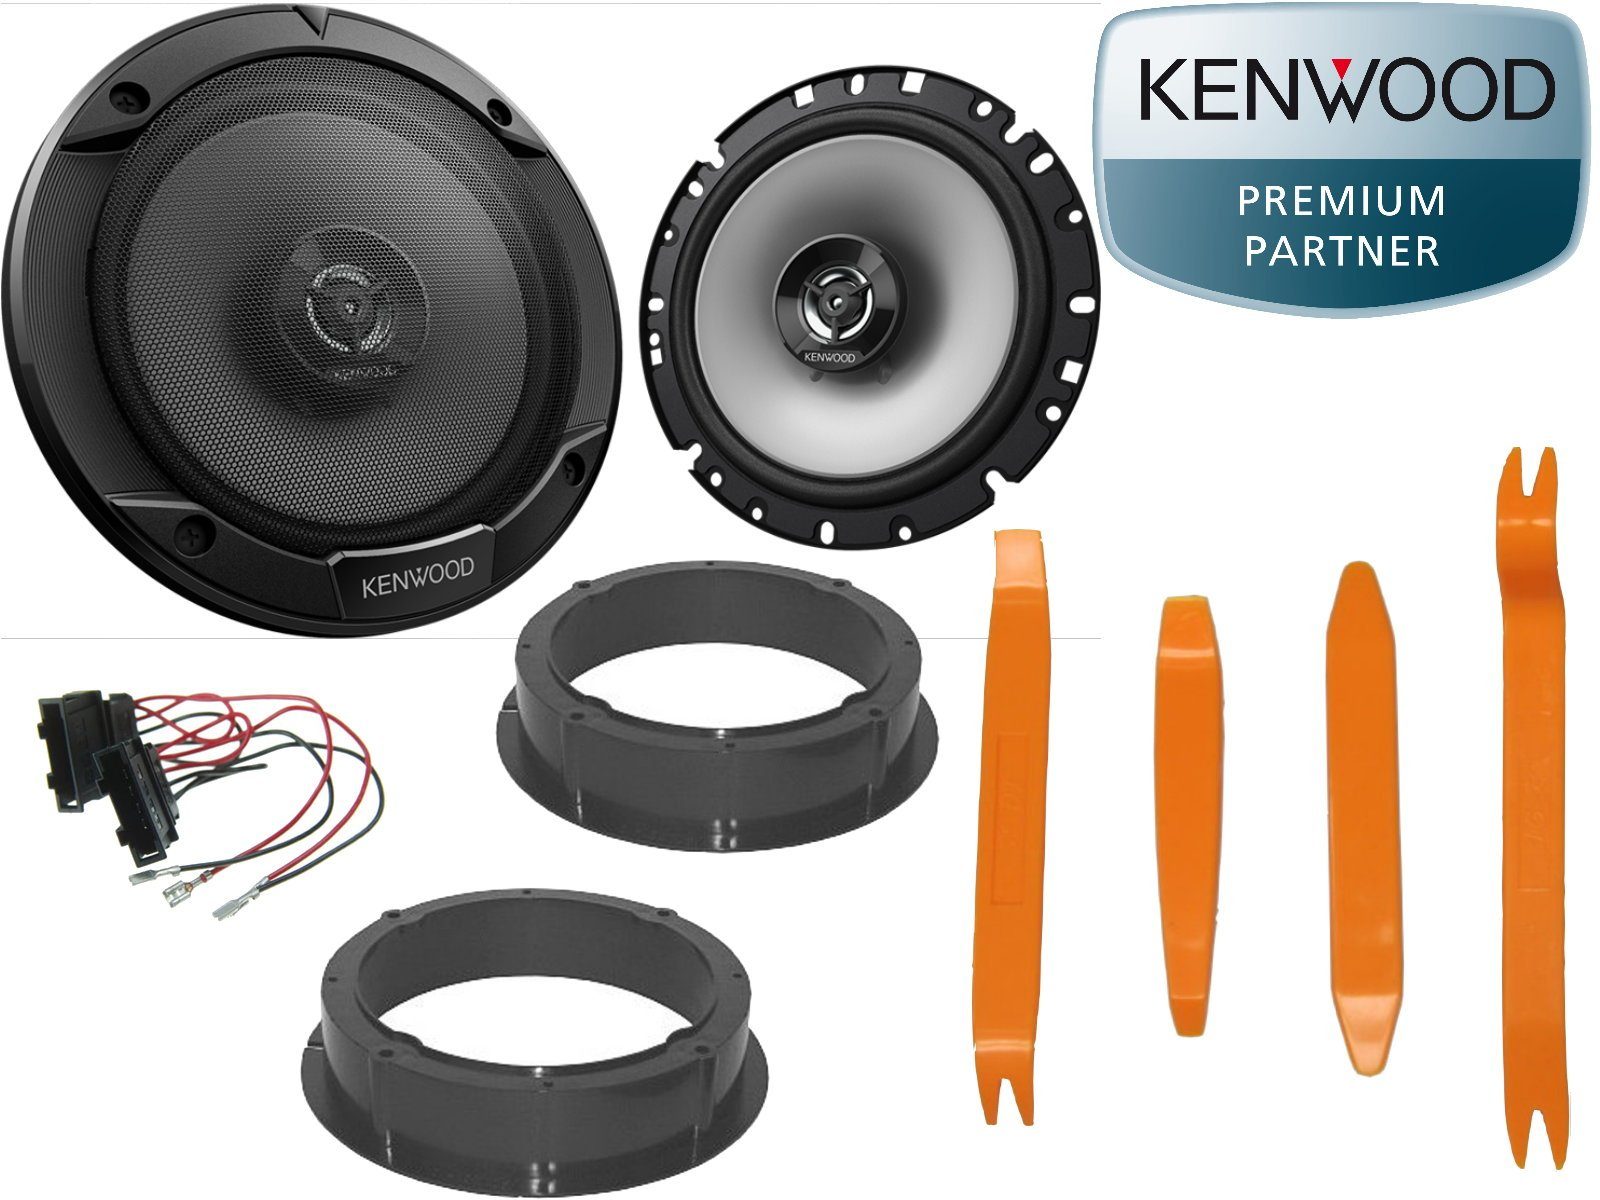 DSX Kenwood passend für Golf VII Ausbau Hebel Set VW + 7 Auto-Lautsprecher Tür 300Watt